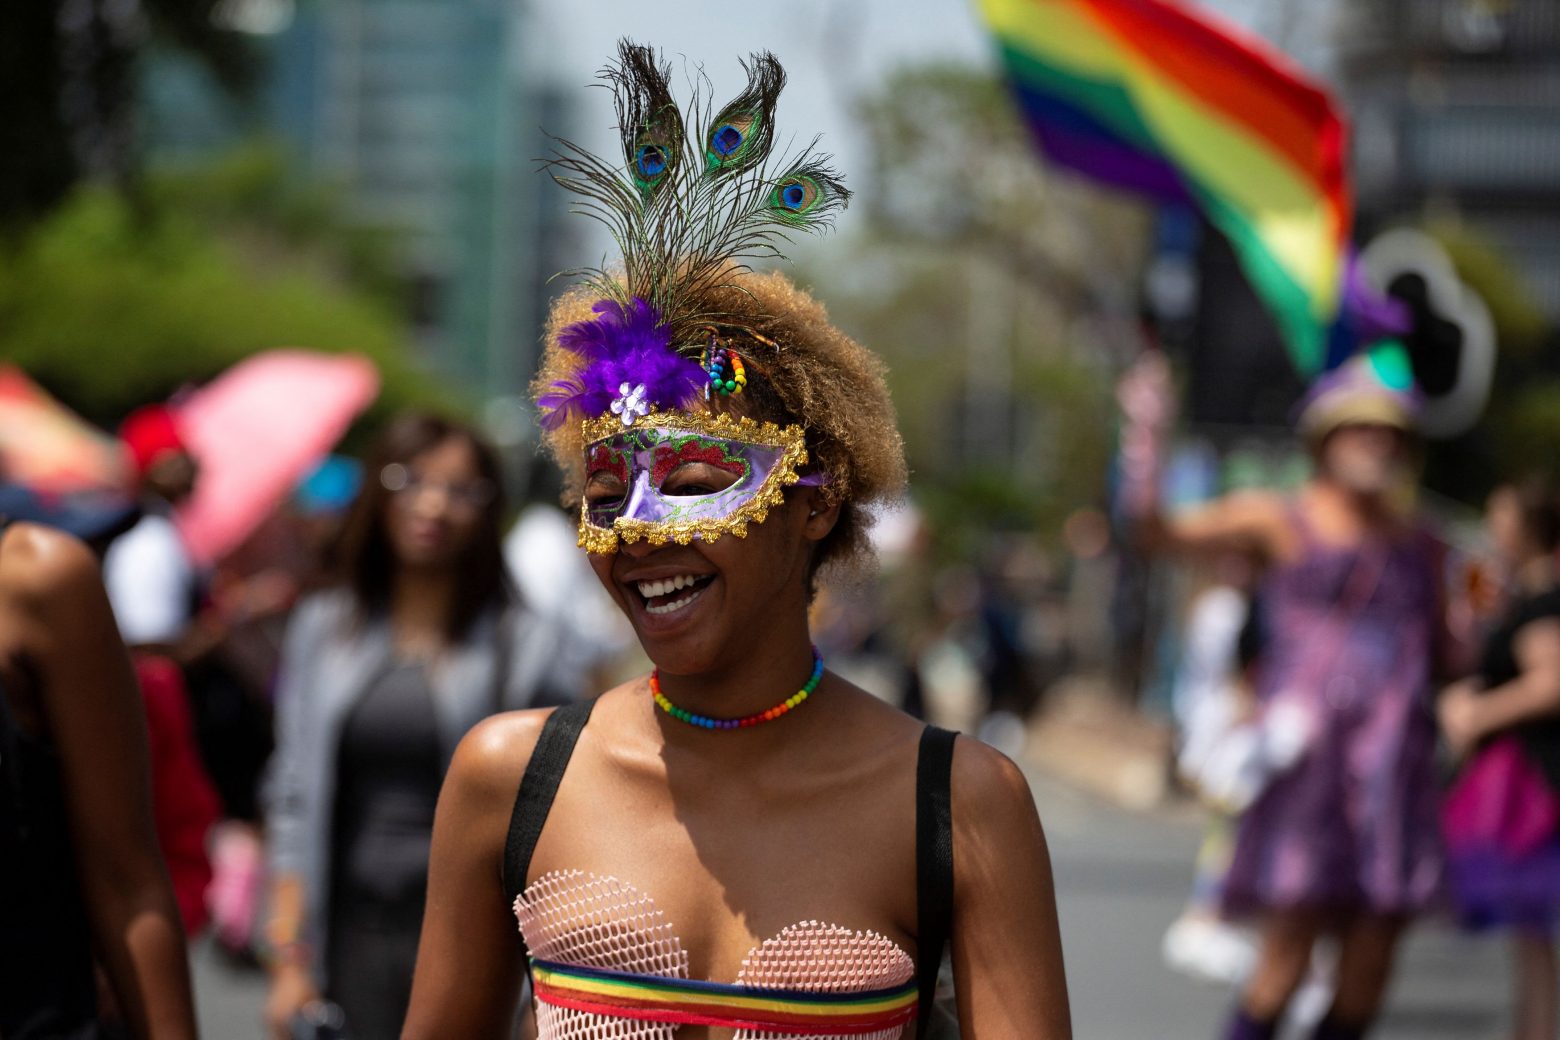 Γιοχάνεσμπουργκ Pride: Χιλιάδες συμμετείχαν παρά τις απειλές για τρομοκρατική επίθεση